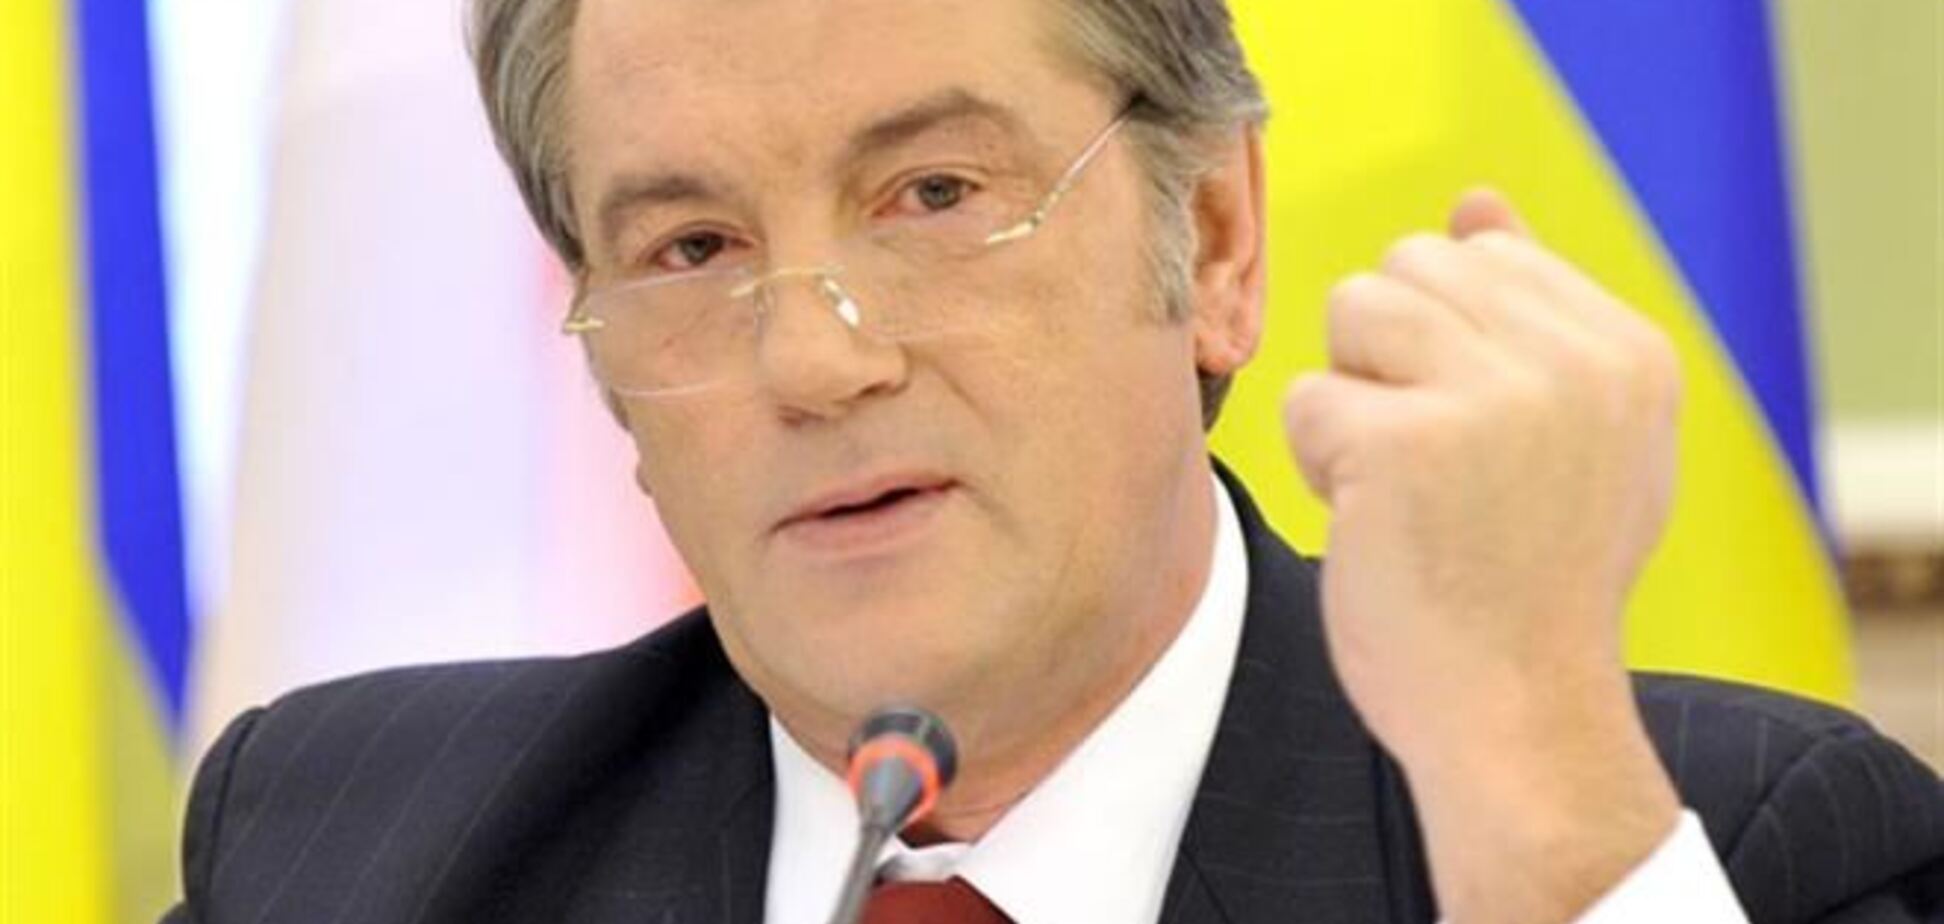 Ющенко вслед за Януковичем съехал с госдачи в Конча-Заспе 